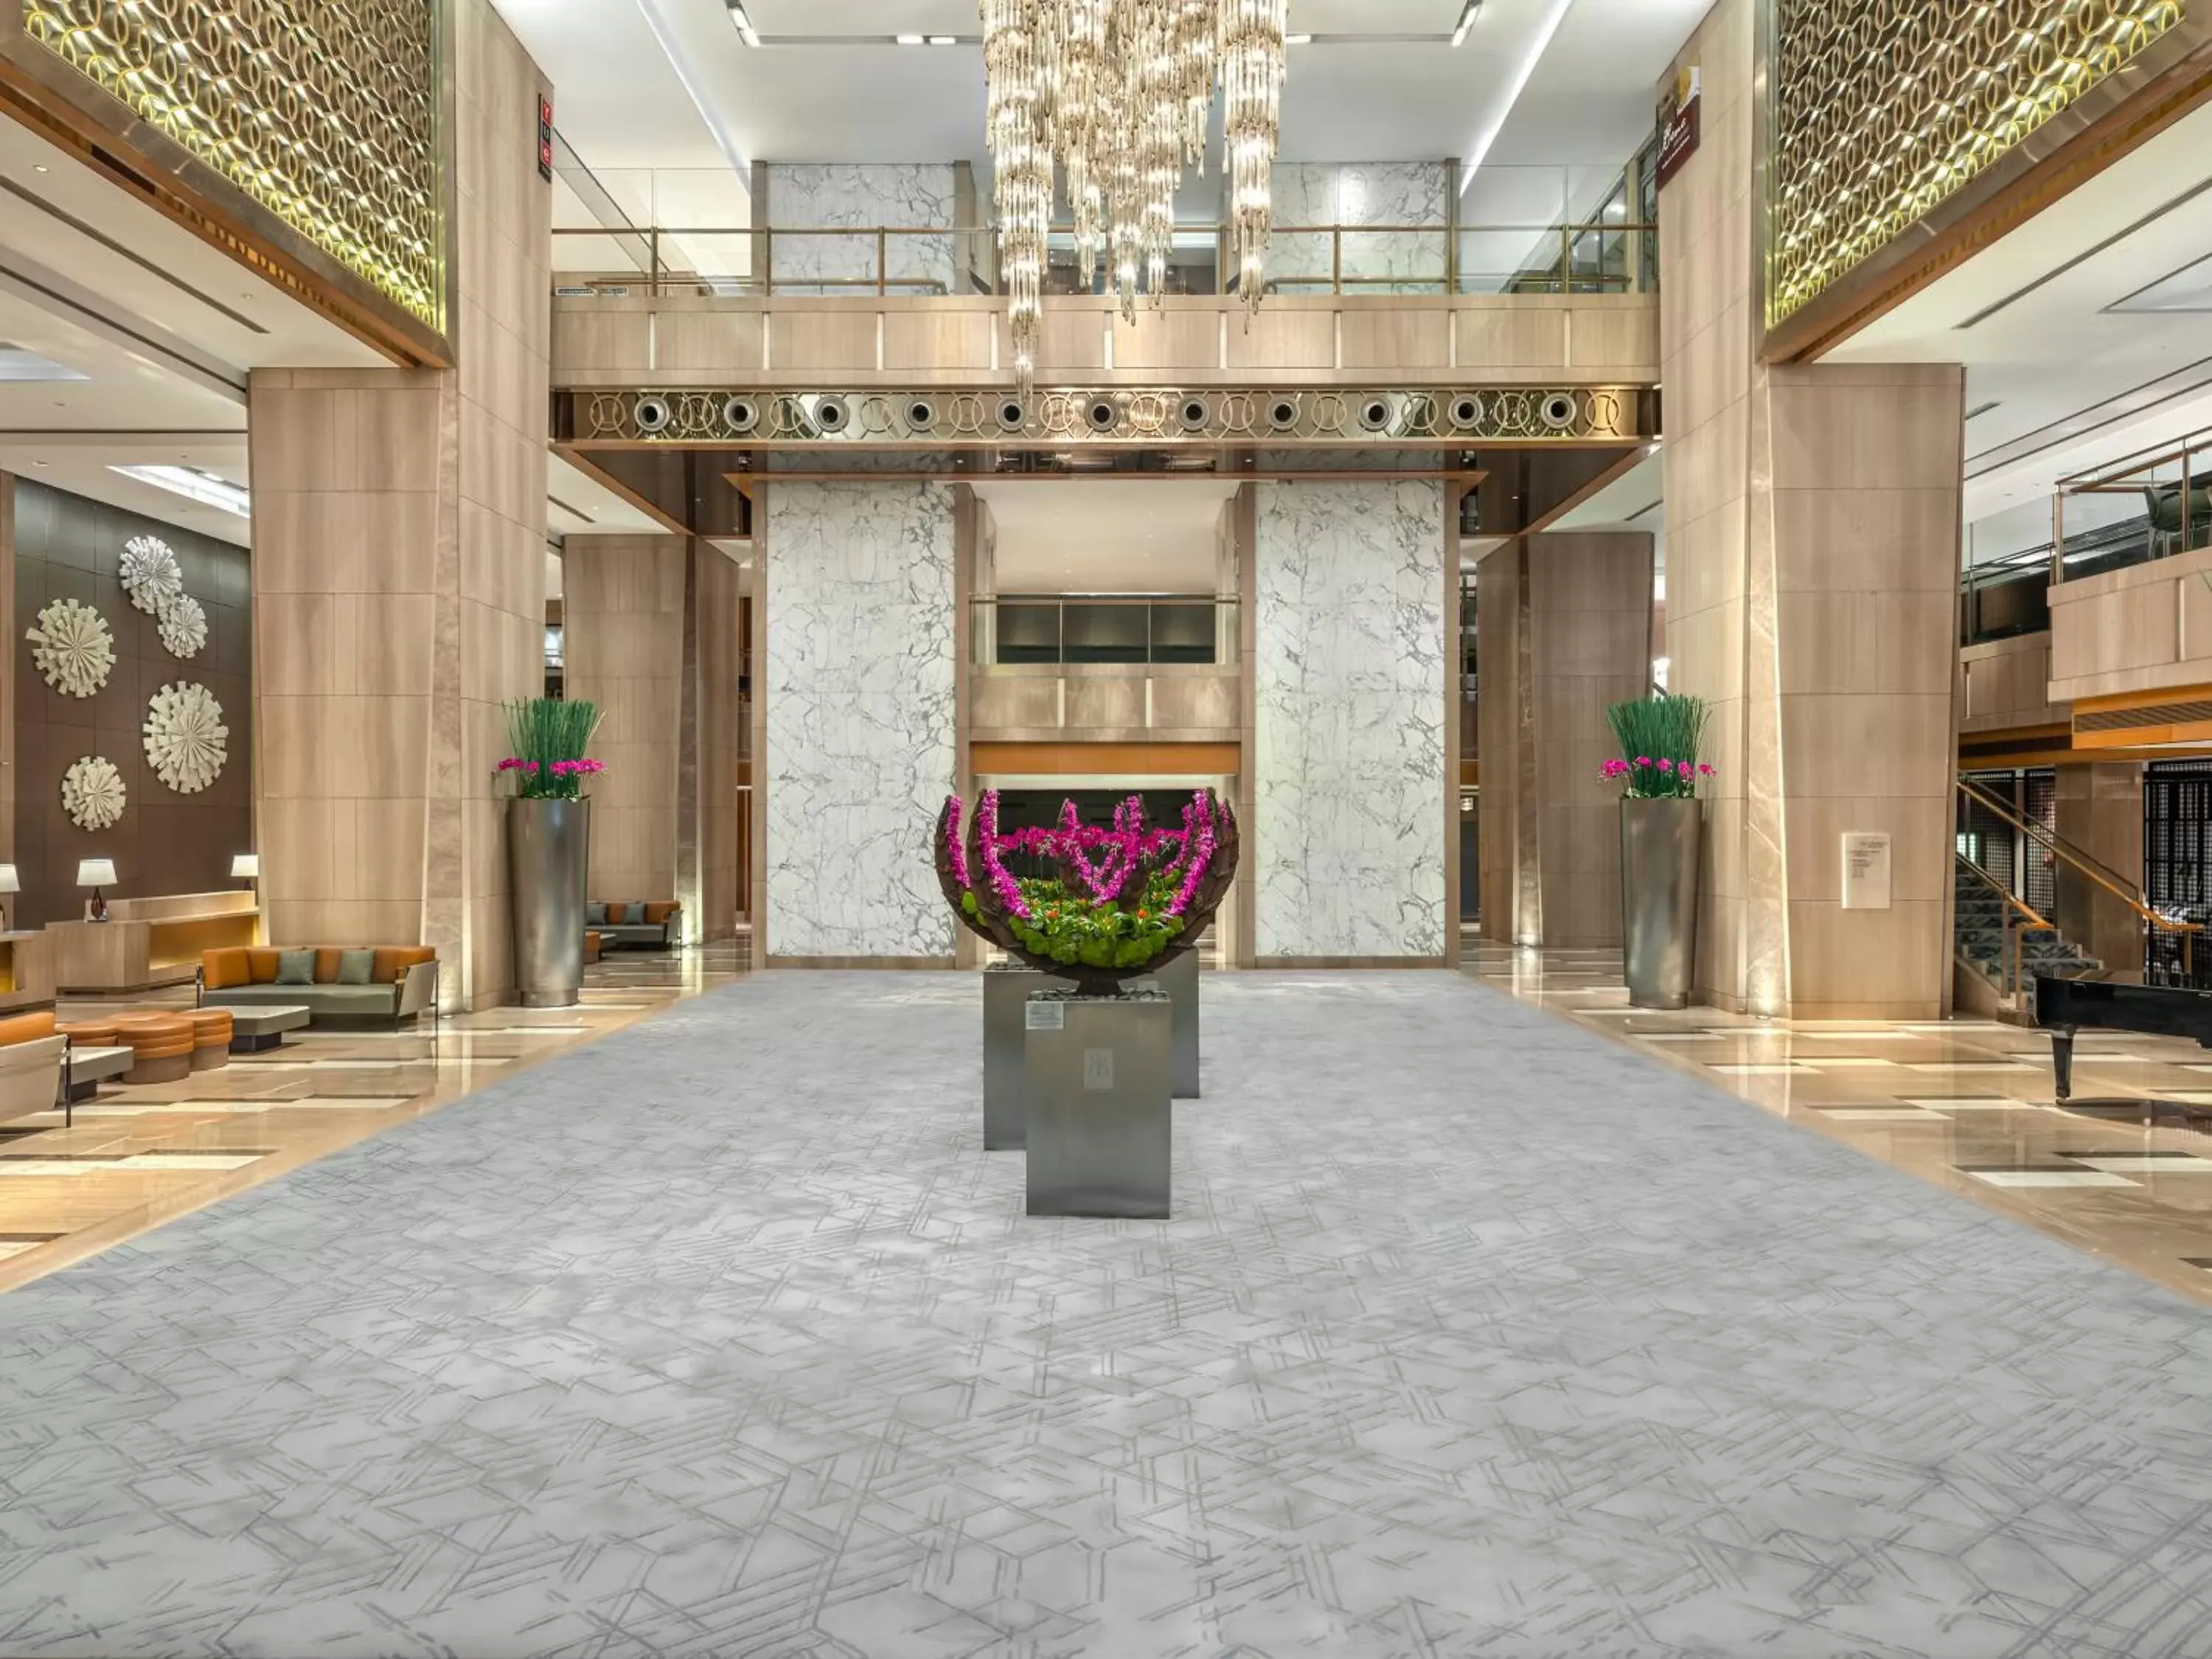 Lobby or reception in Sheraton Guangzhou Hotel